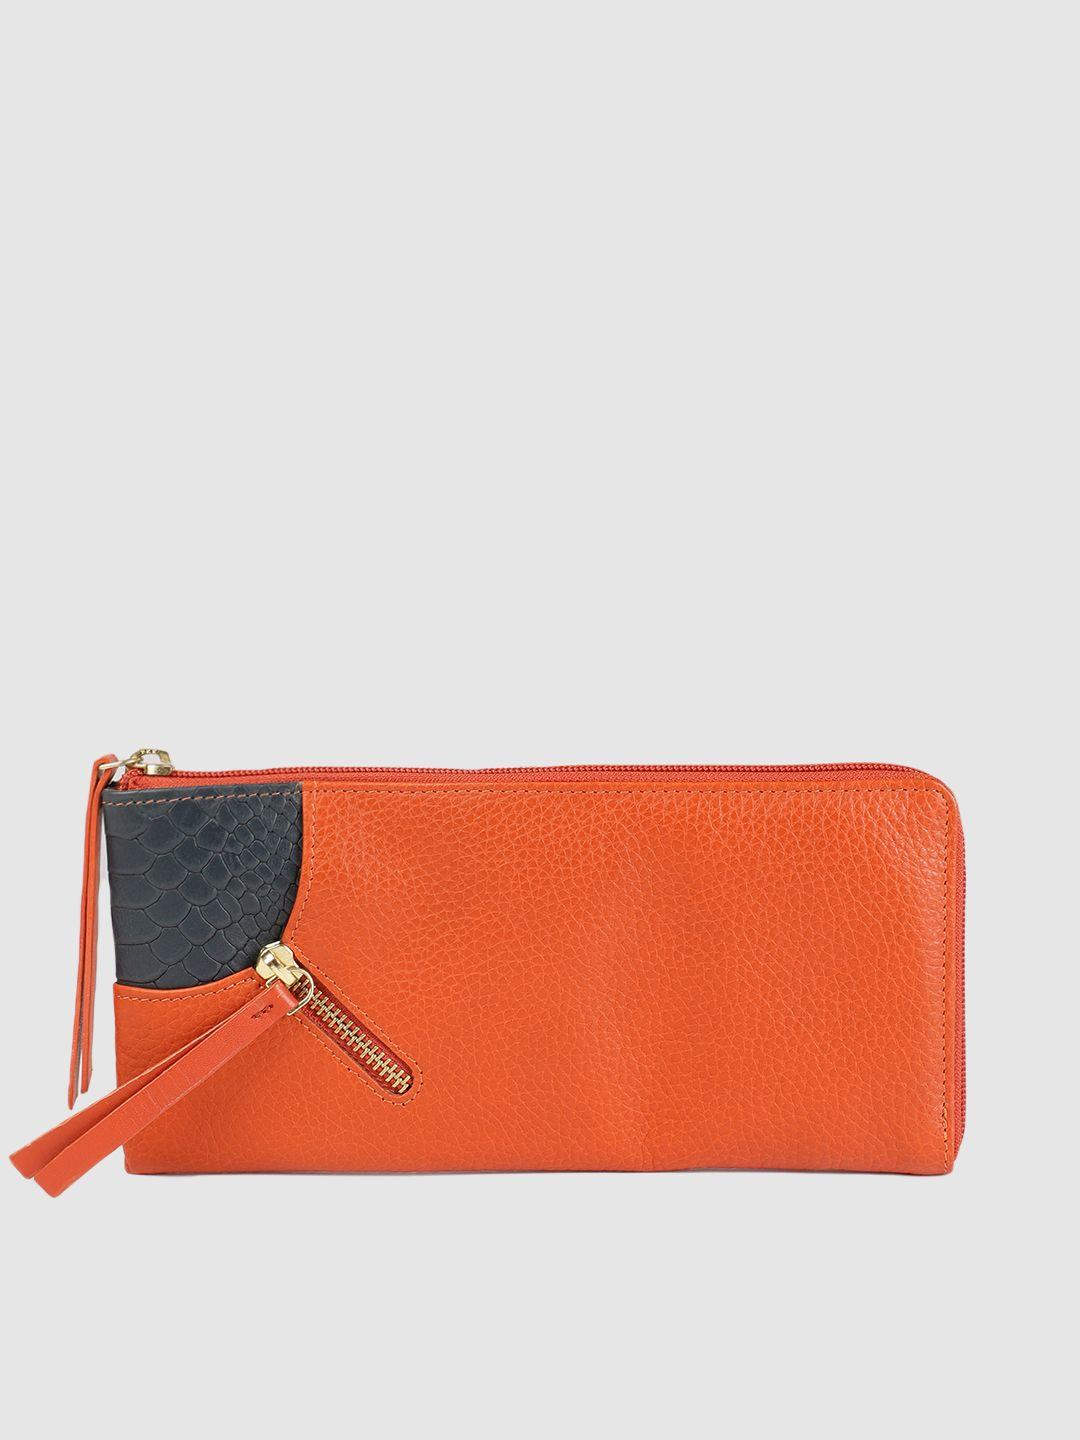 hidesign women orange textured zip around wallet